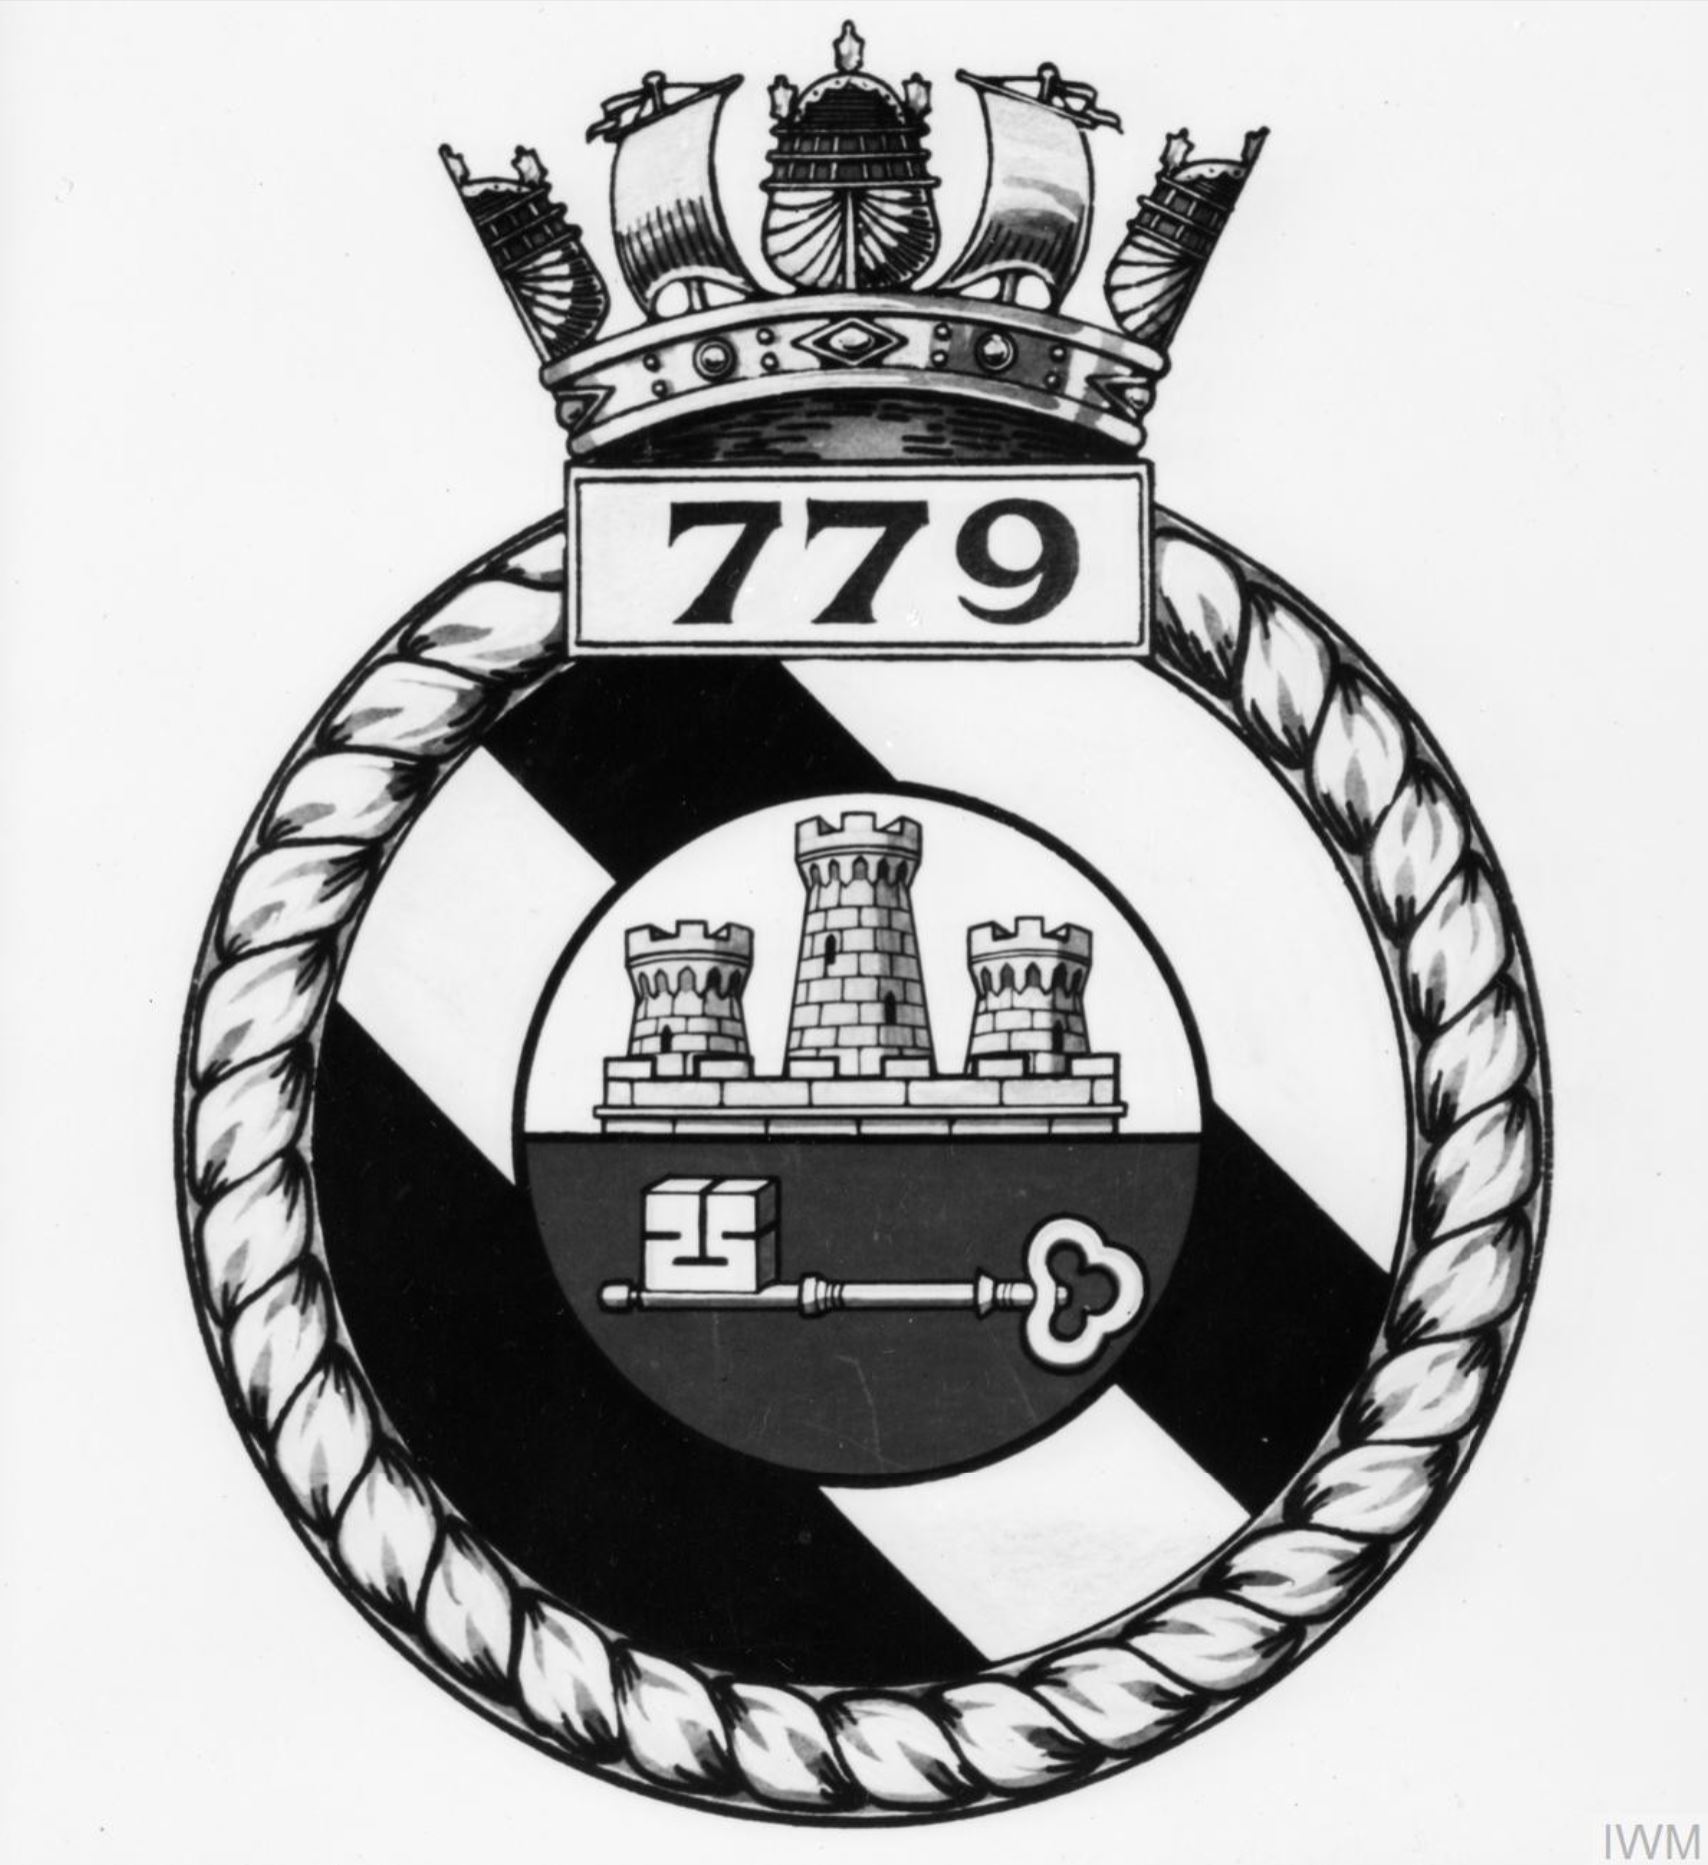 Fleet Air Arm crest of 779 Squadron IWM A26767